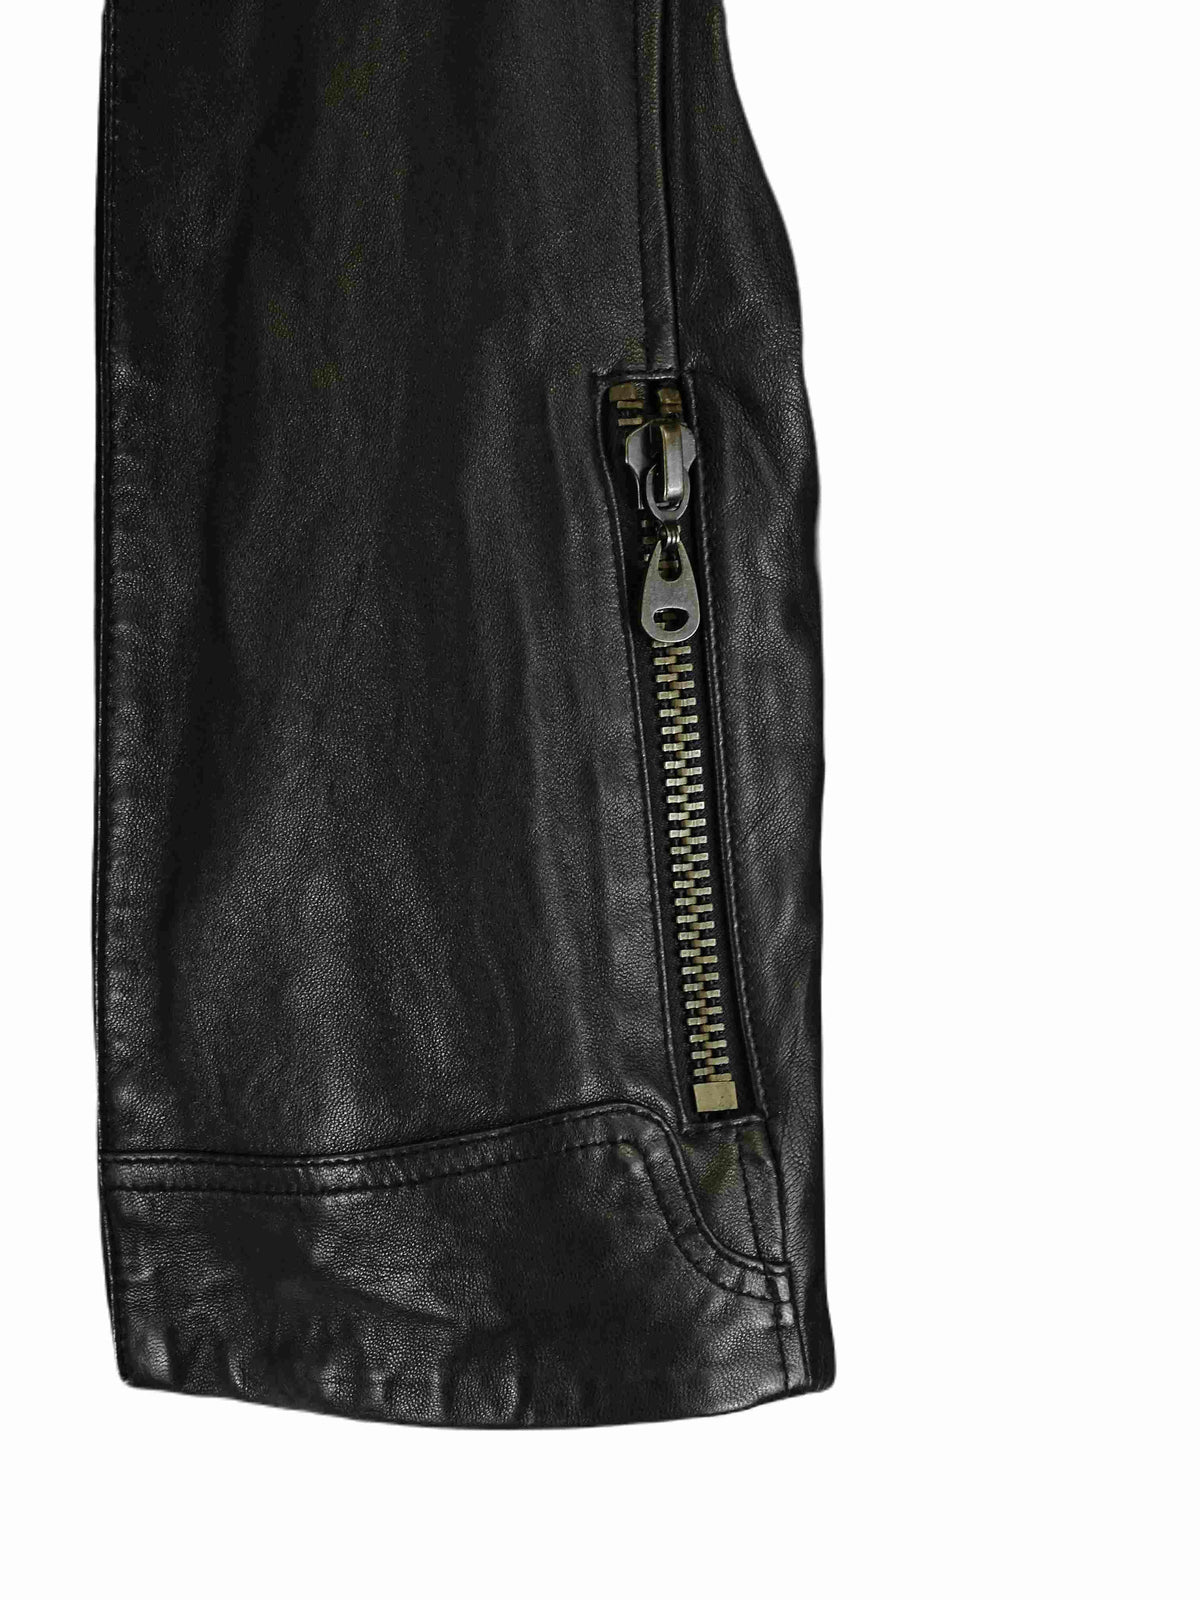 Doma Black Leather Jacket S